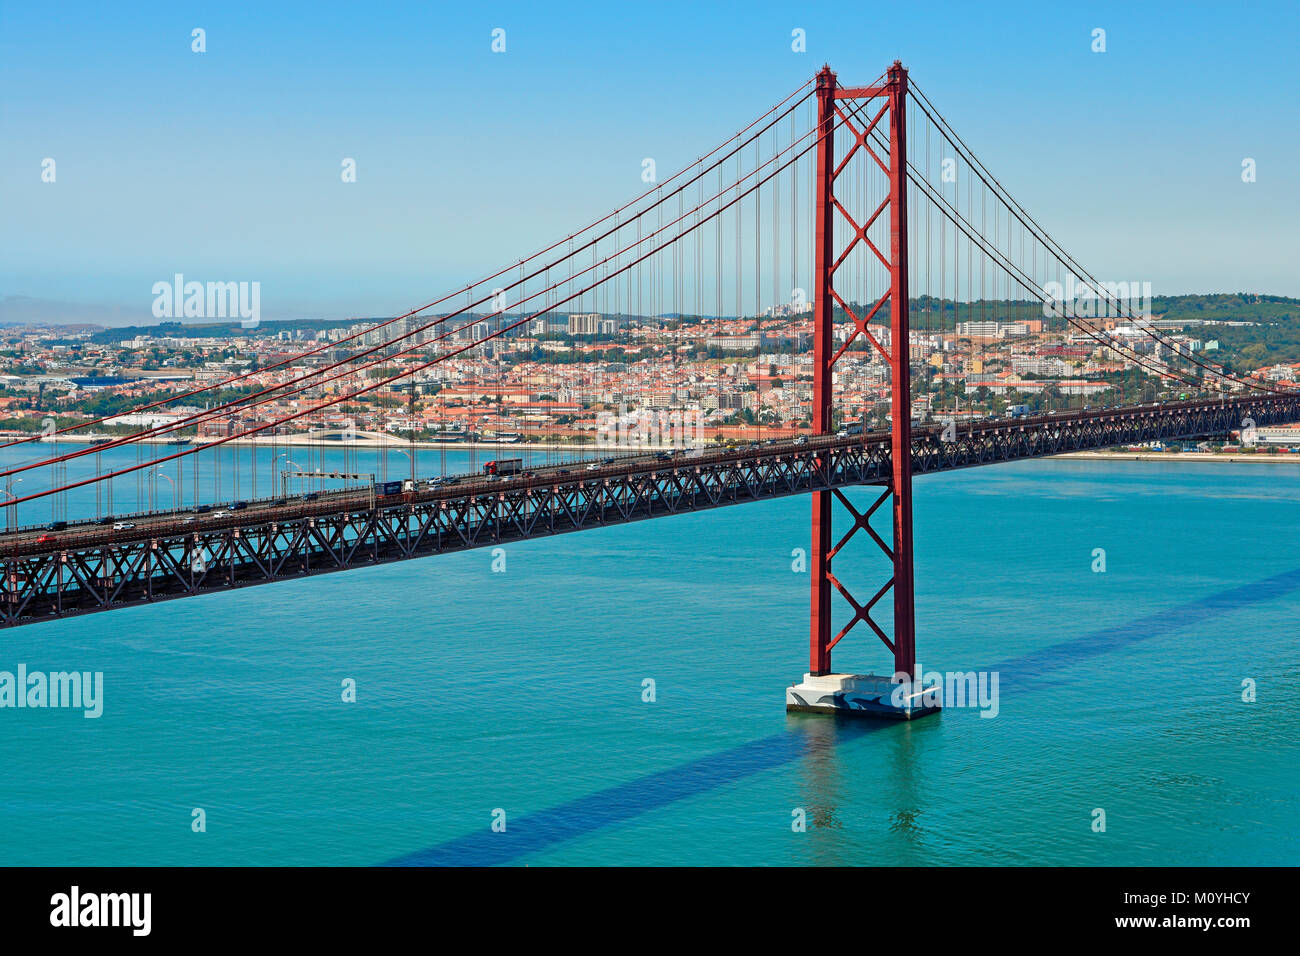 Bridge of April 25th,Ponte 25 de Abril over the river Tejo,Lisbon,Portugal Stock Photo